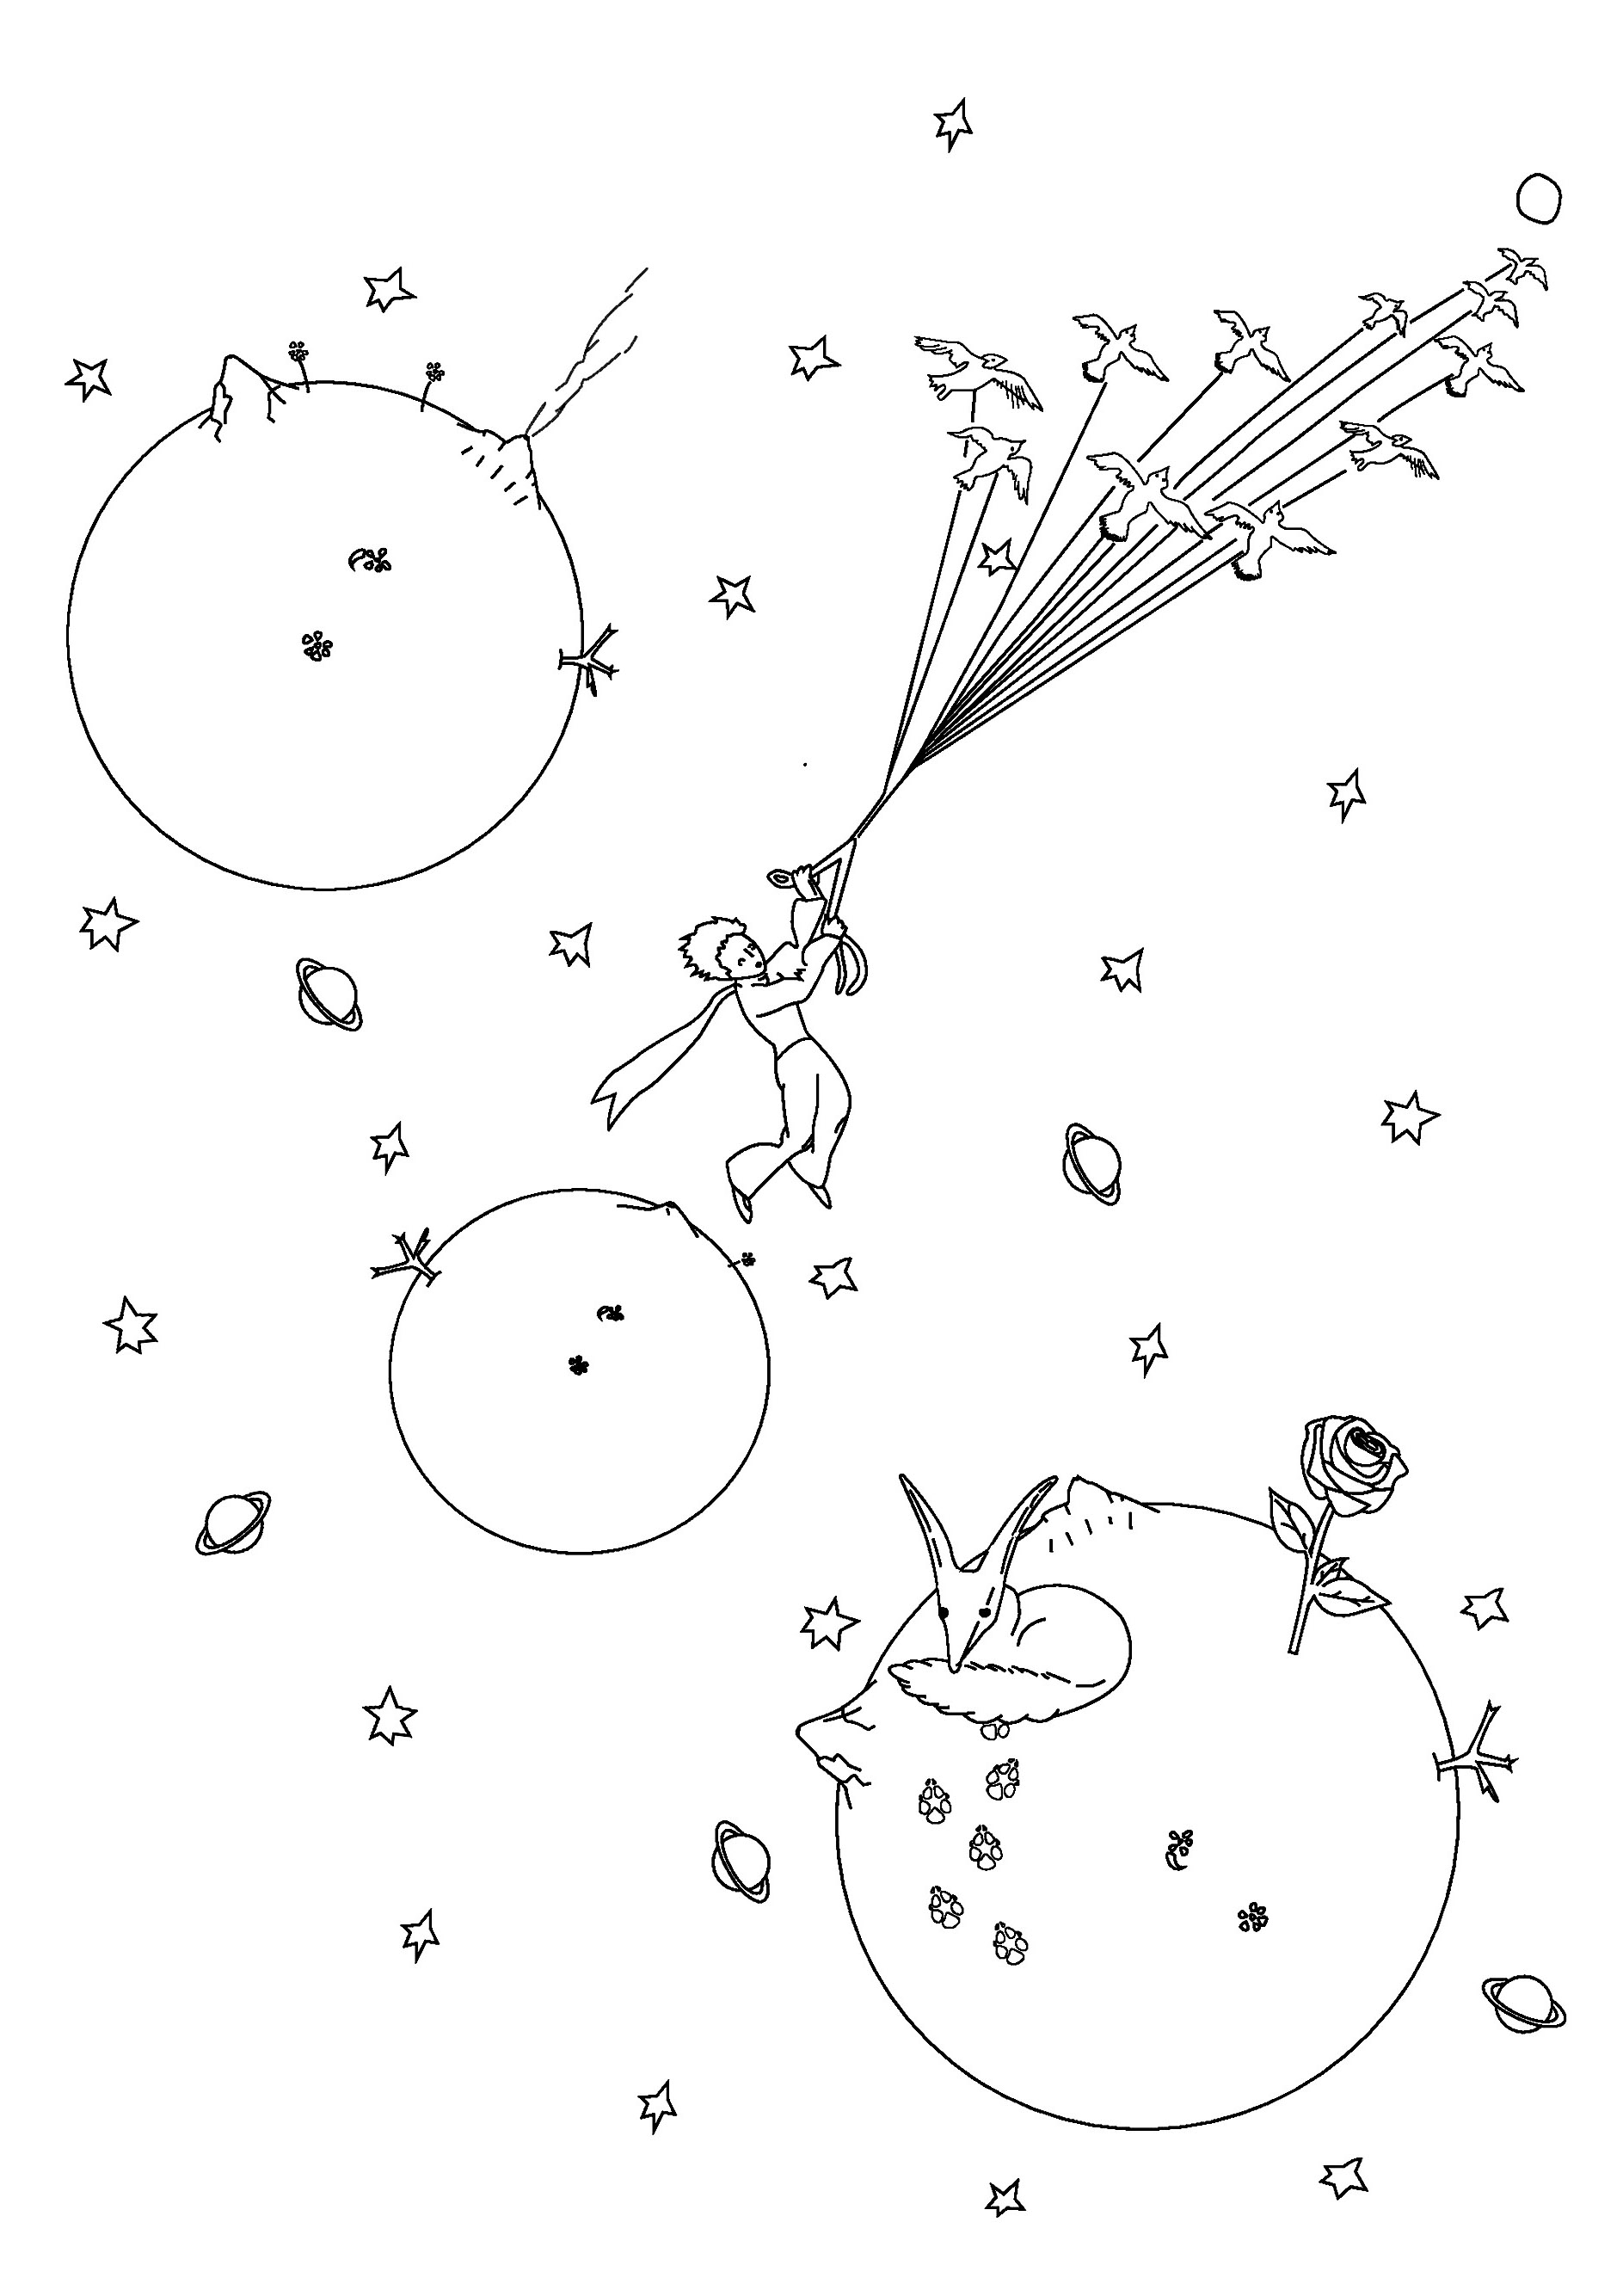 Coloriez le Petit Prince en plein vol dans l'espace, grâce à ses étoiles filantes magiques